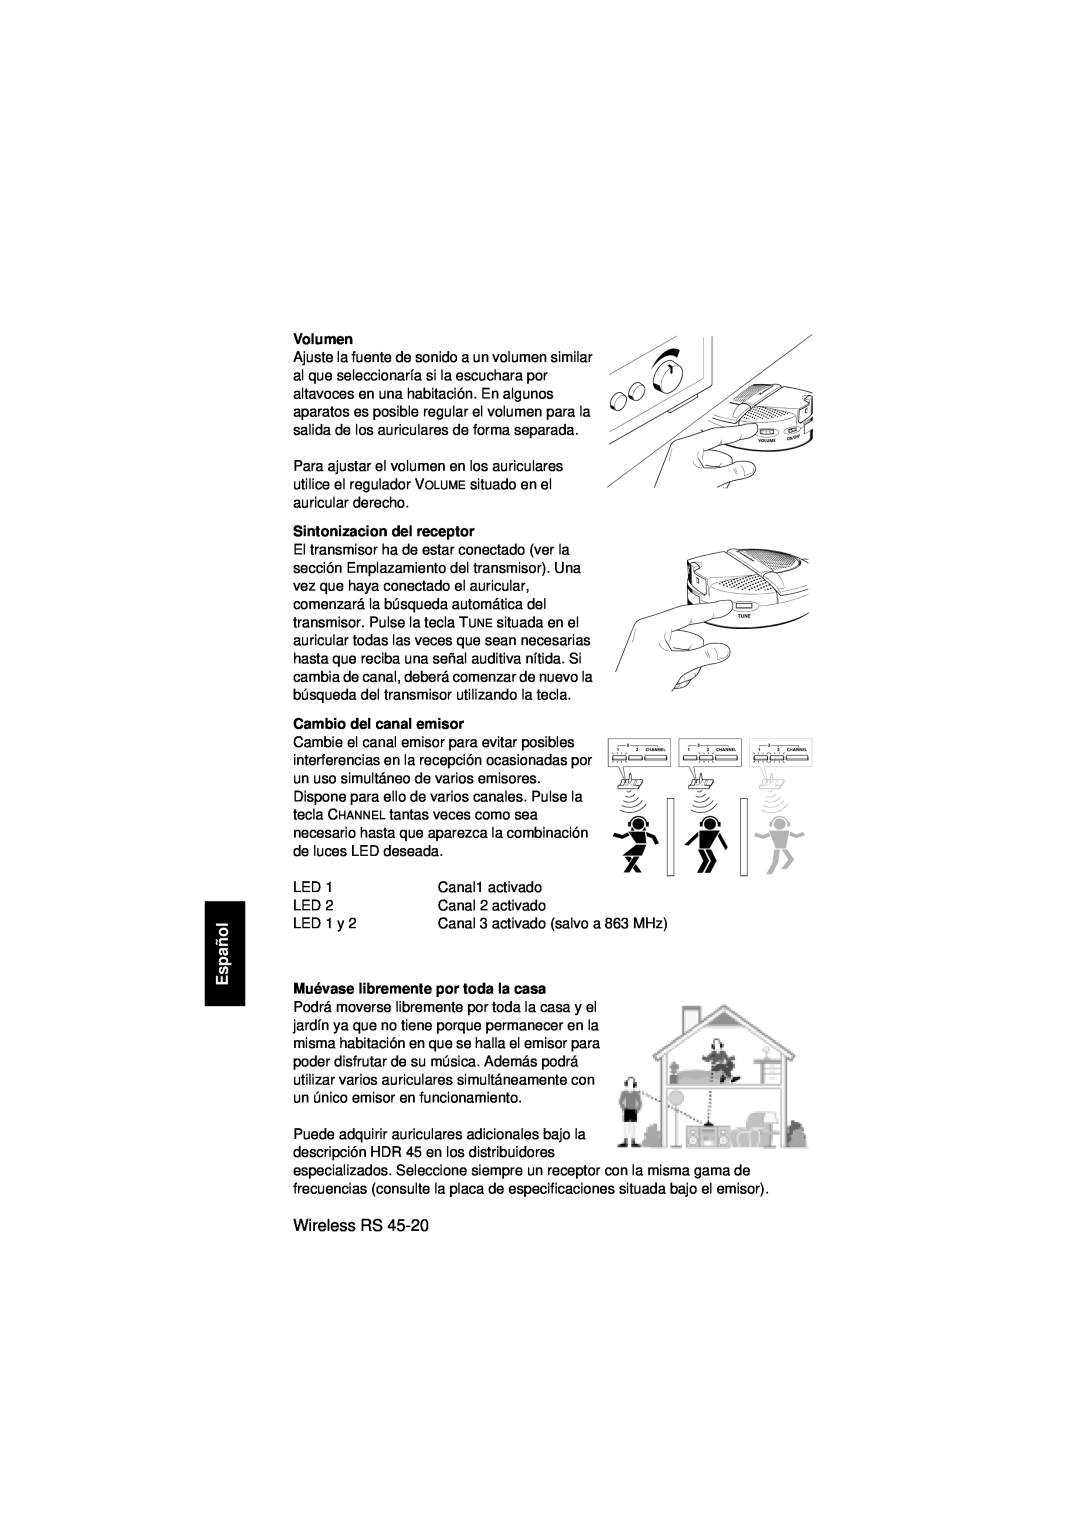 Sennheiser RS 45 instruction manual Español, Wireless RS, Volumen, Sintonizacion del receptor, Cambio del canal emisor 